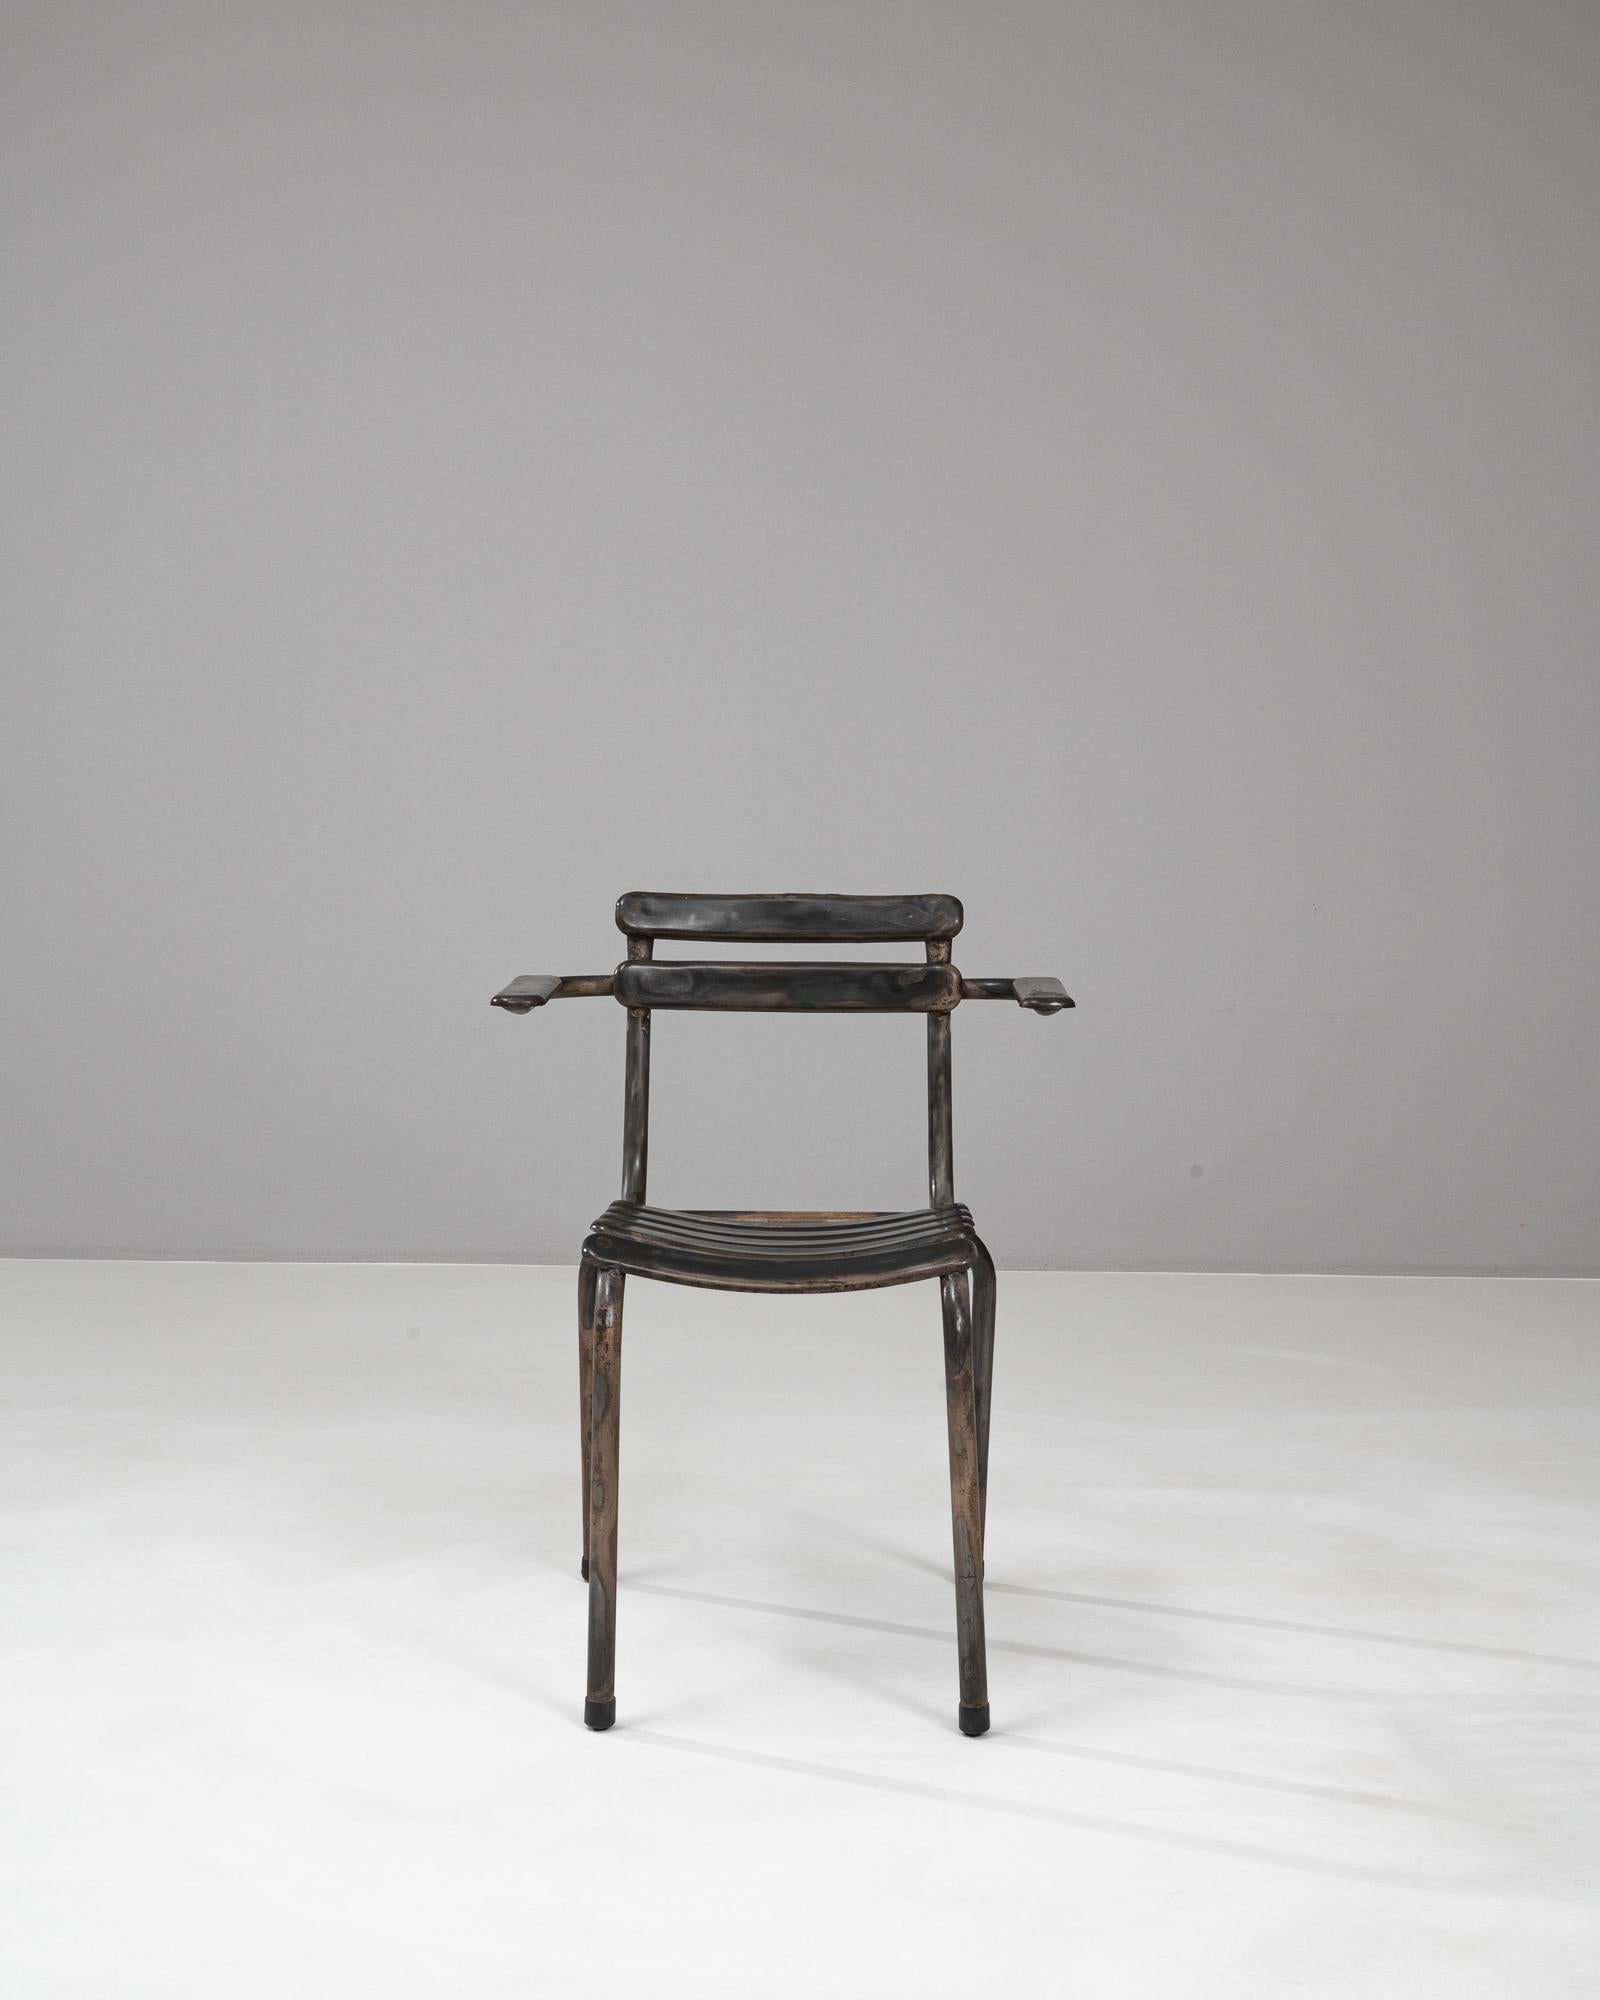 Der 20th Century French Metal Chair ist ein Meisterwerk des Vintage-Industriedesigns, das mühelos einen Hauch von historischer Eleganz in jeden Raum bringt. Der aus robustem Metall gefertigte Stuhl verfügt über einen einzigartigen, geschwungenen